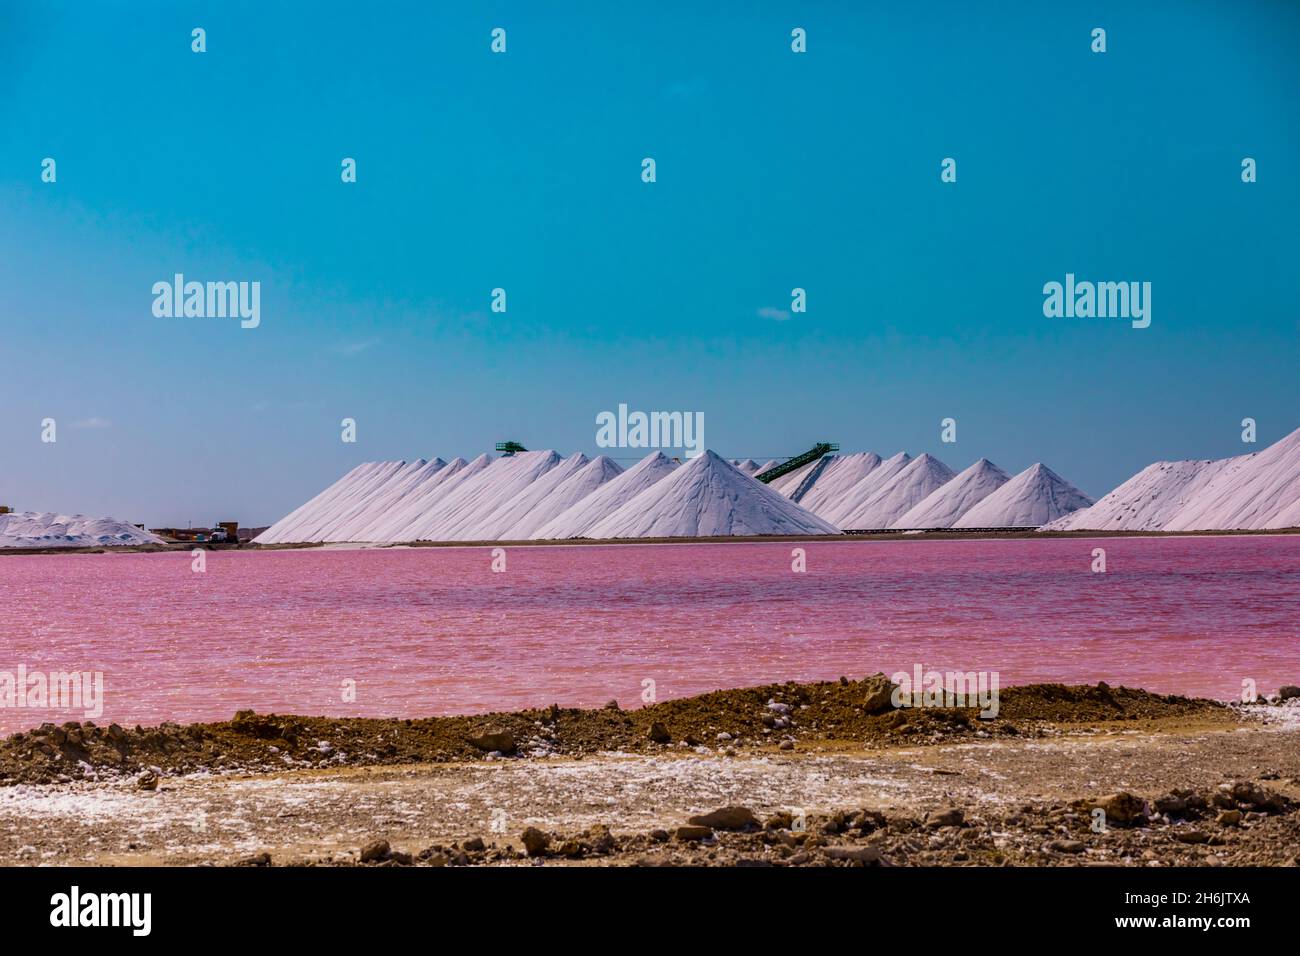 Vue sur l'océan de couleur rose surplombant les Pyramides de sel de Bonaire de loin, Bonaire, Antilles néerlandaises, Caraïbes, Amérique centrale Banque D'Images